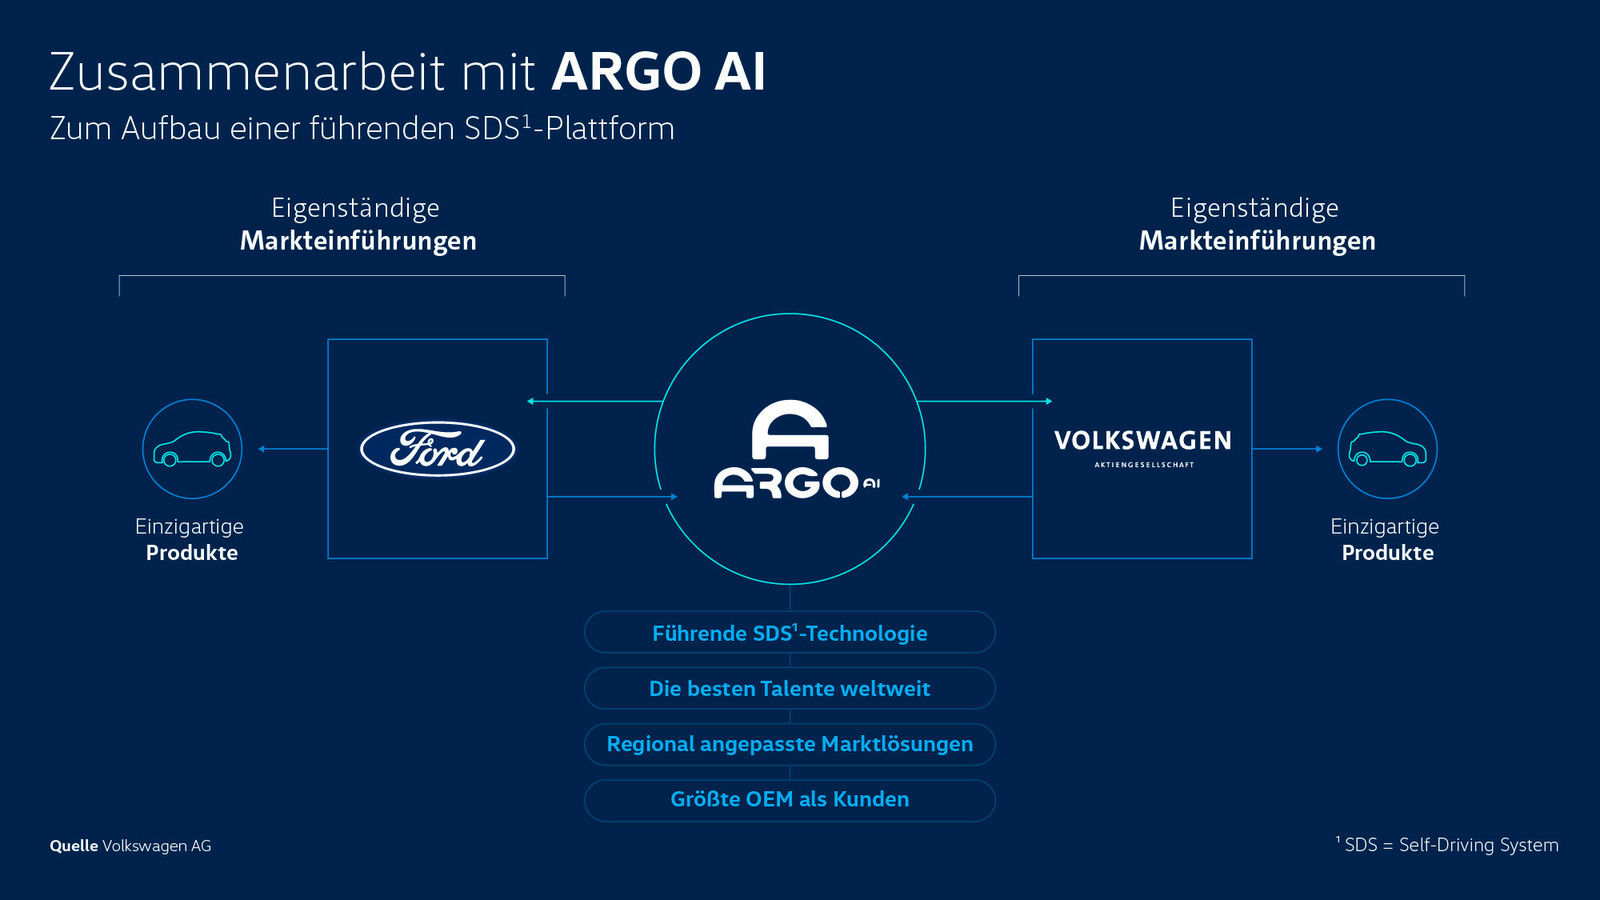 Story "Volkswagen vernetzt sich"